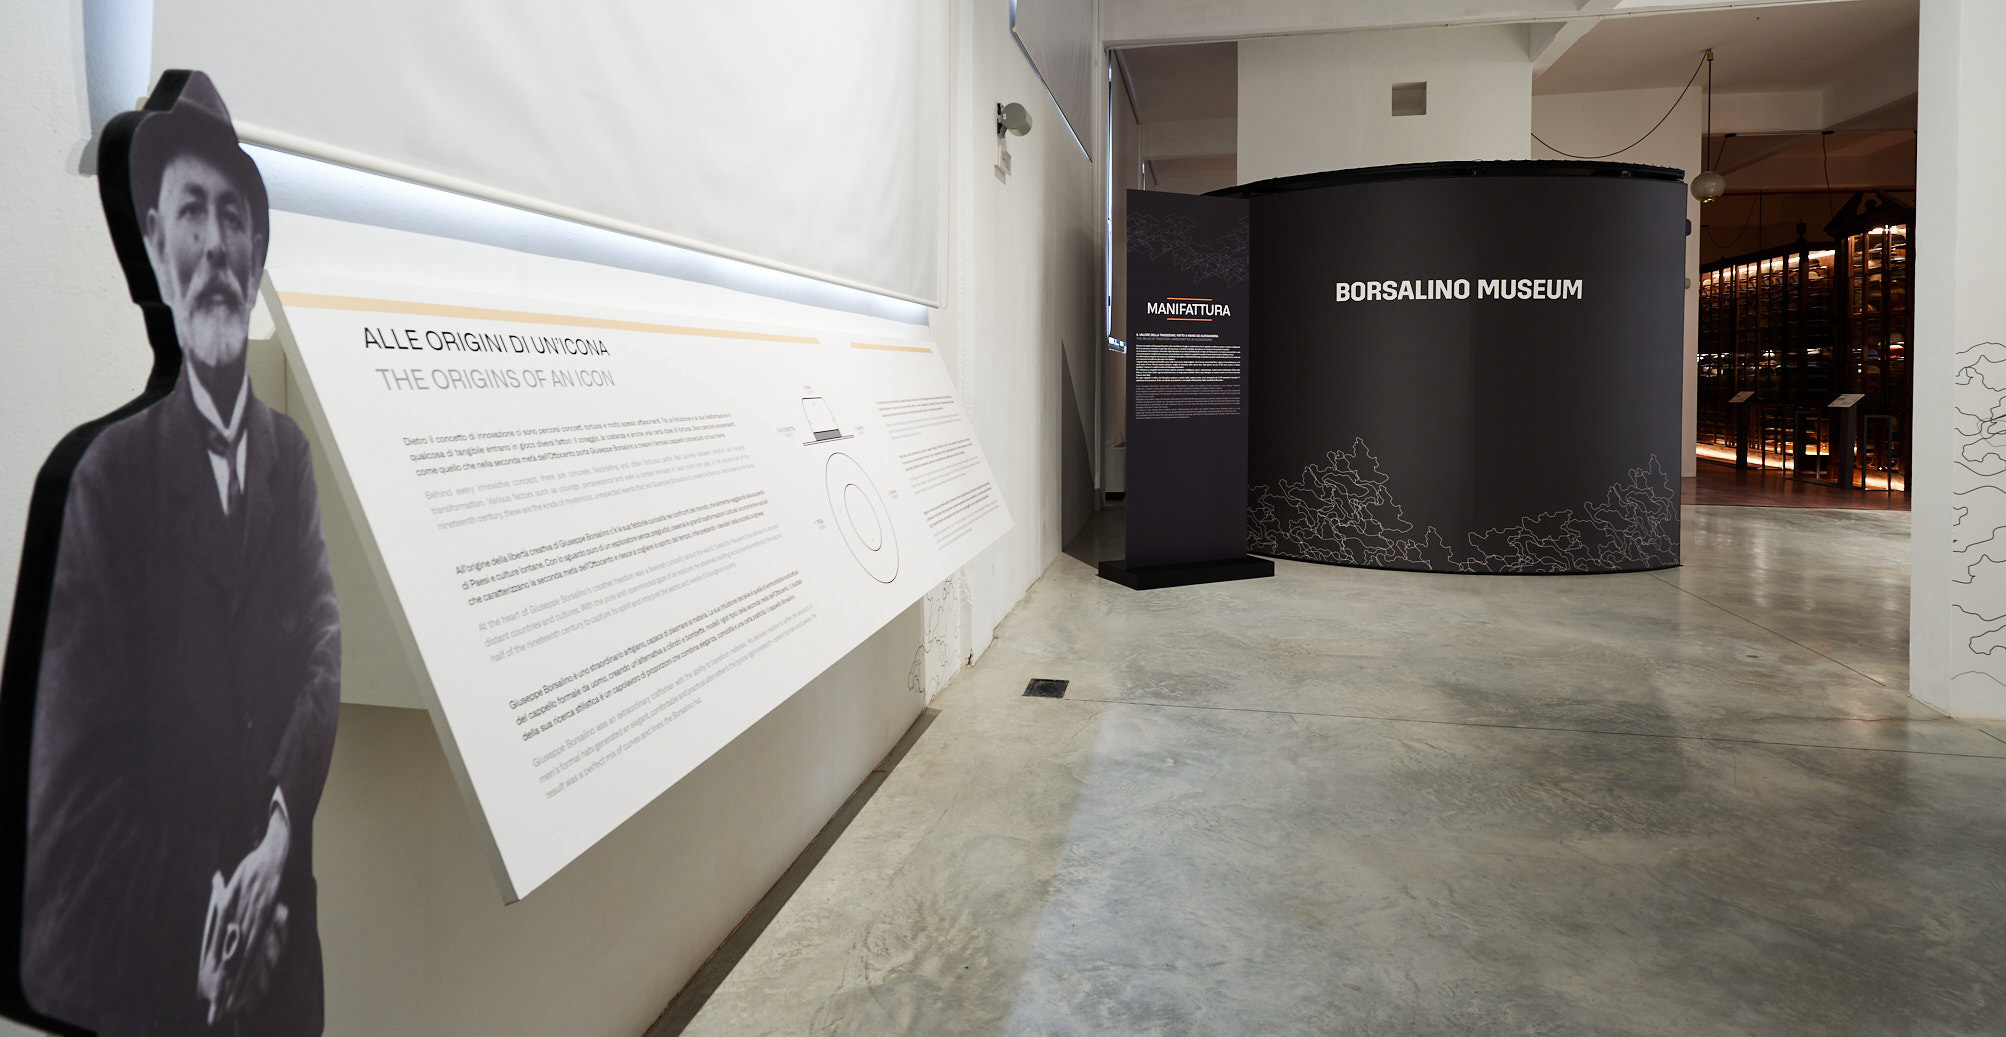 The Borsalino Museum is inaugurated